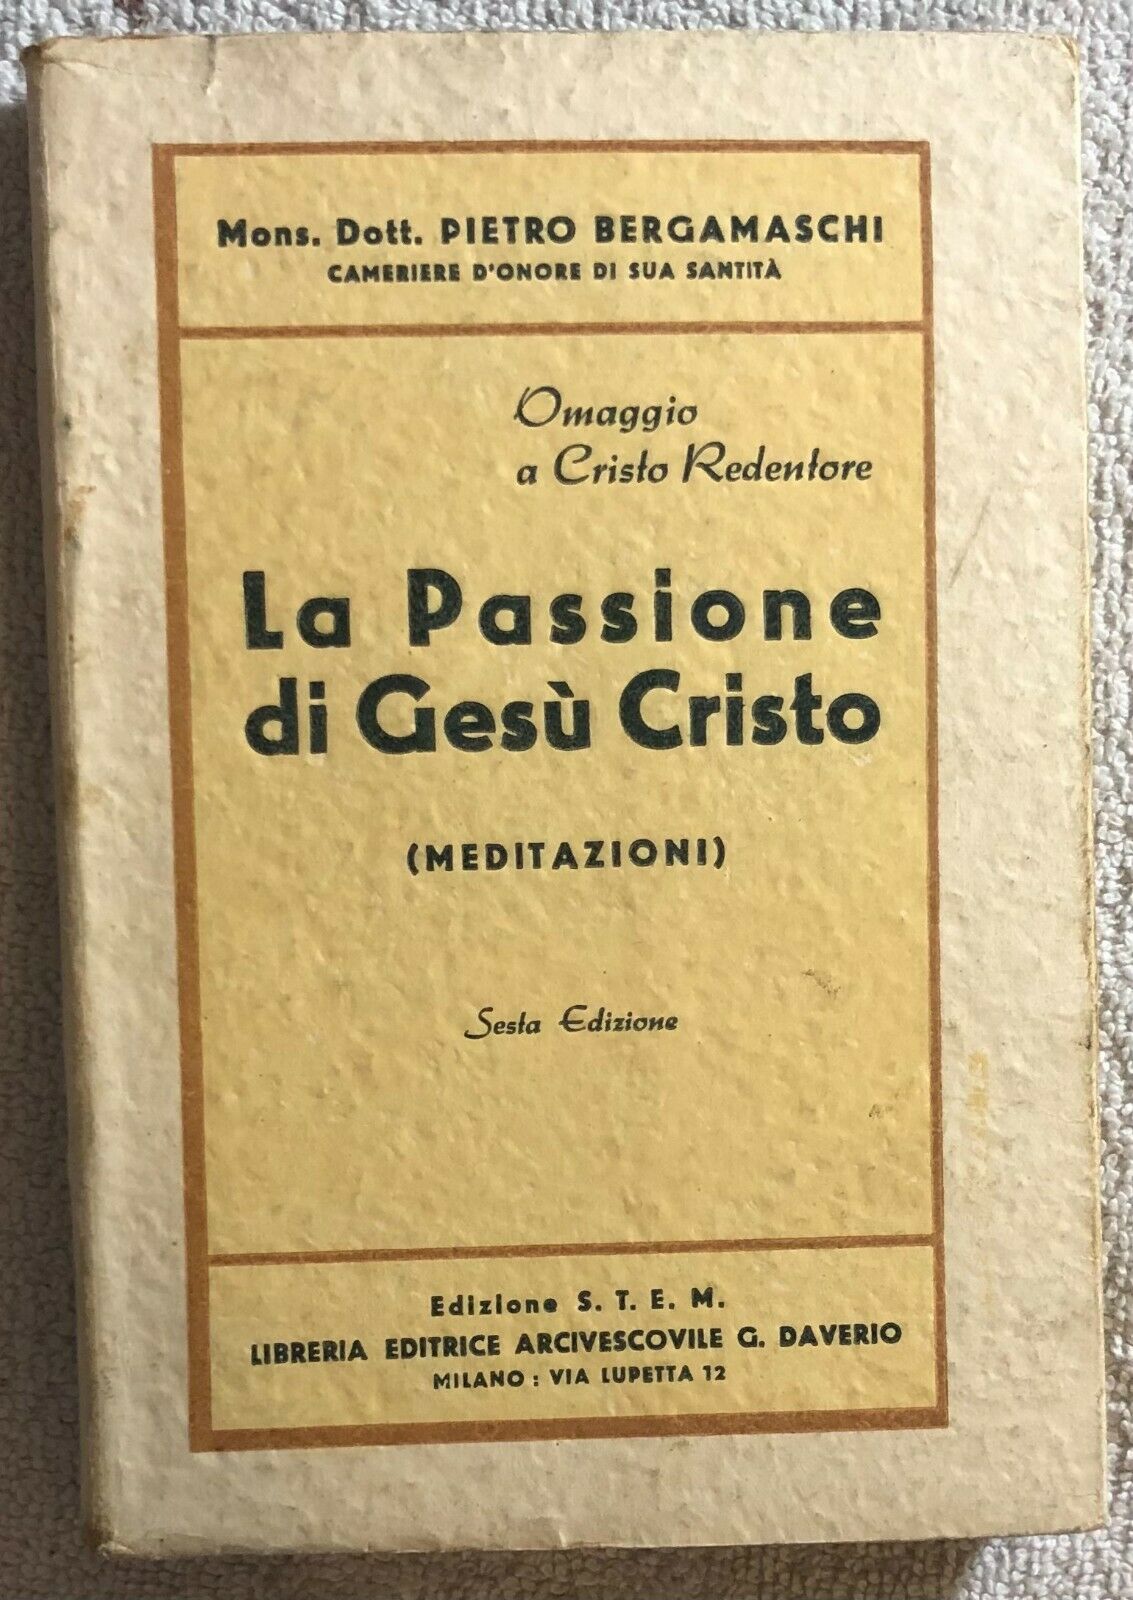 La passione di Ges? Cristo (meditazioni) di Mons. Dott. Pietro Bergamaschi,  193